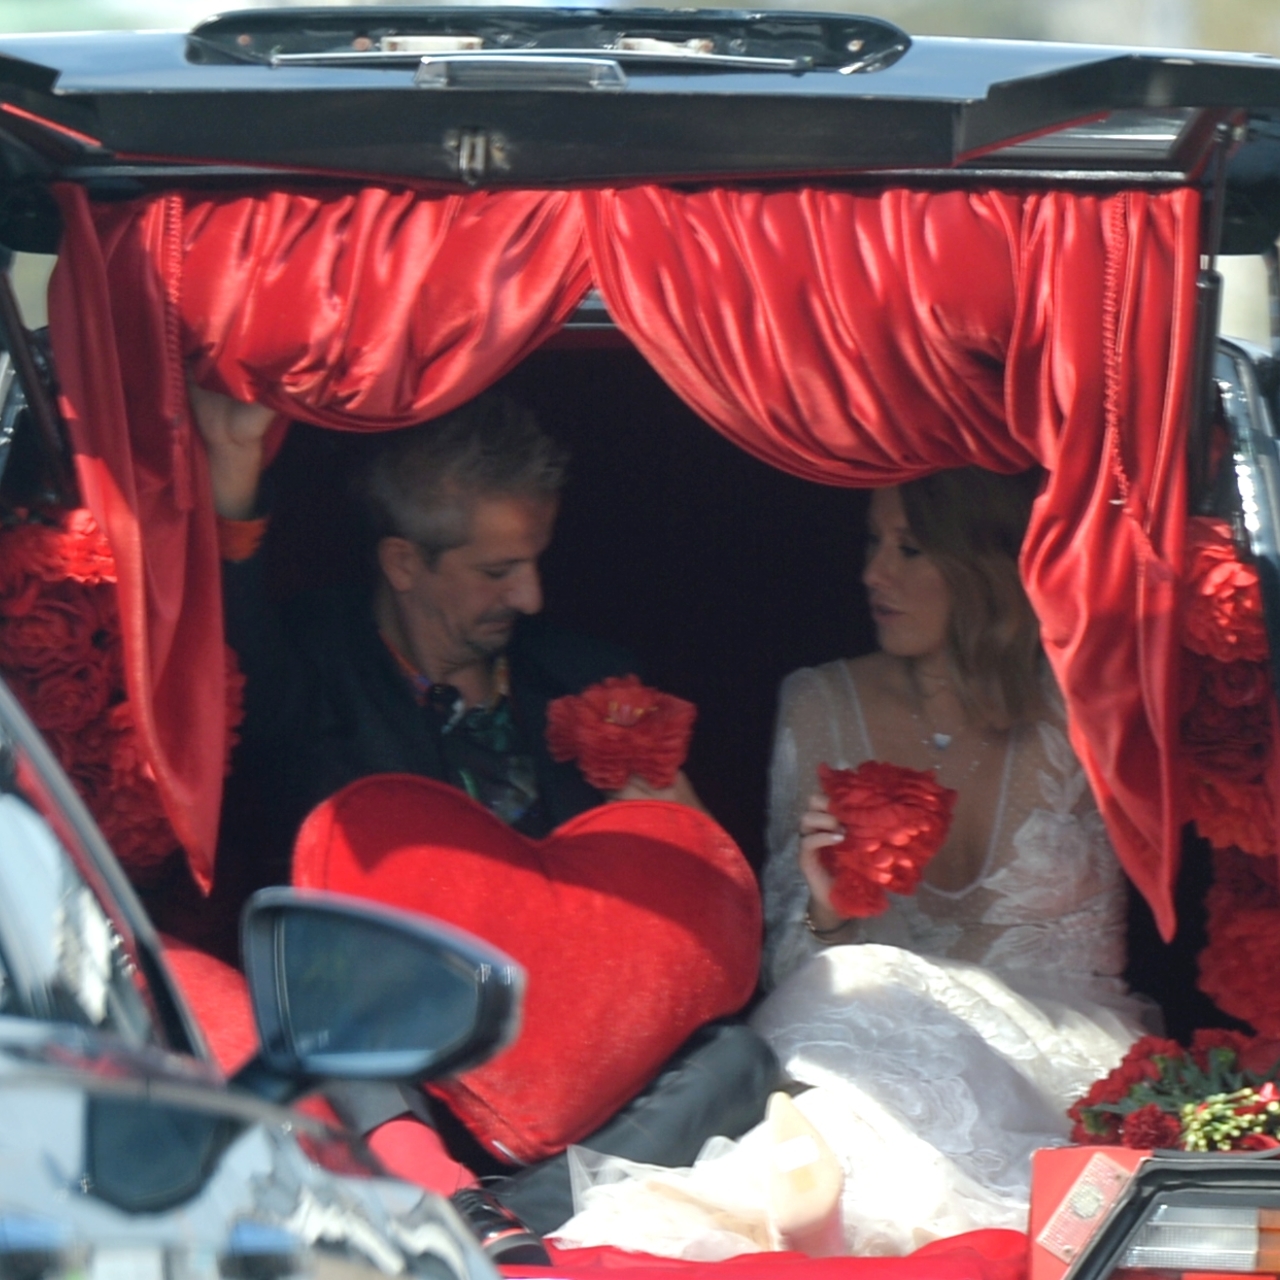 Свадьба Ксении Собчак и Богомолова в катафалке